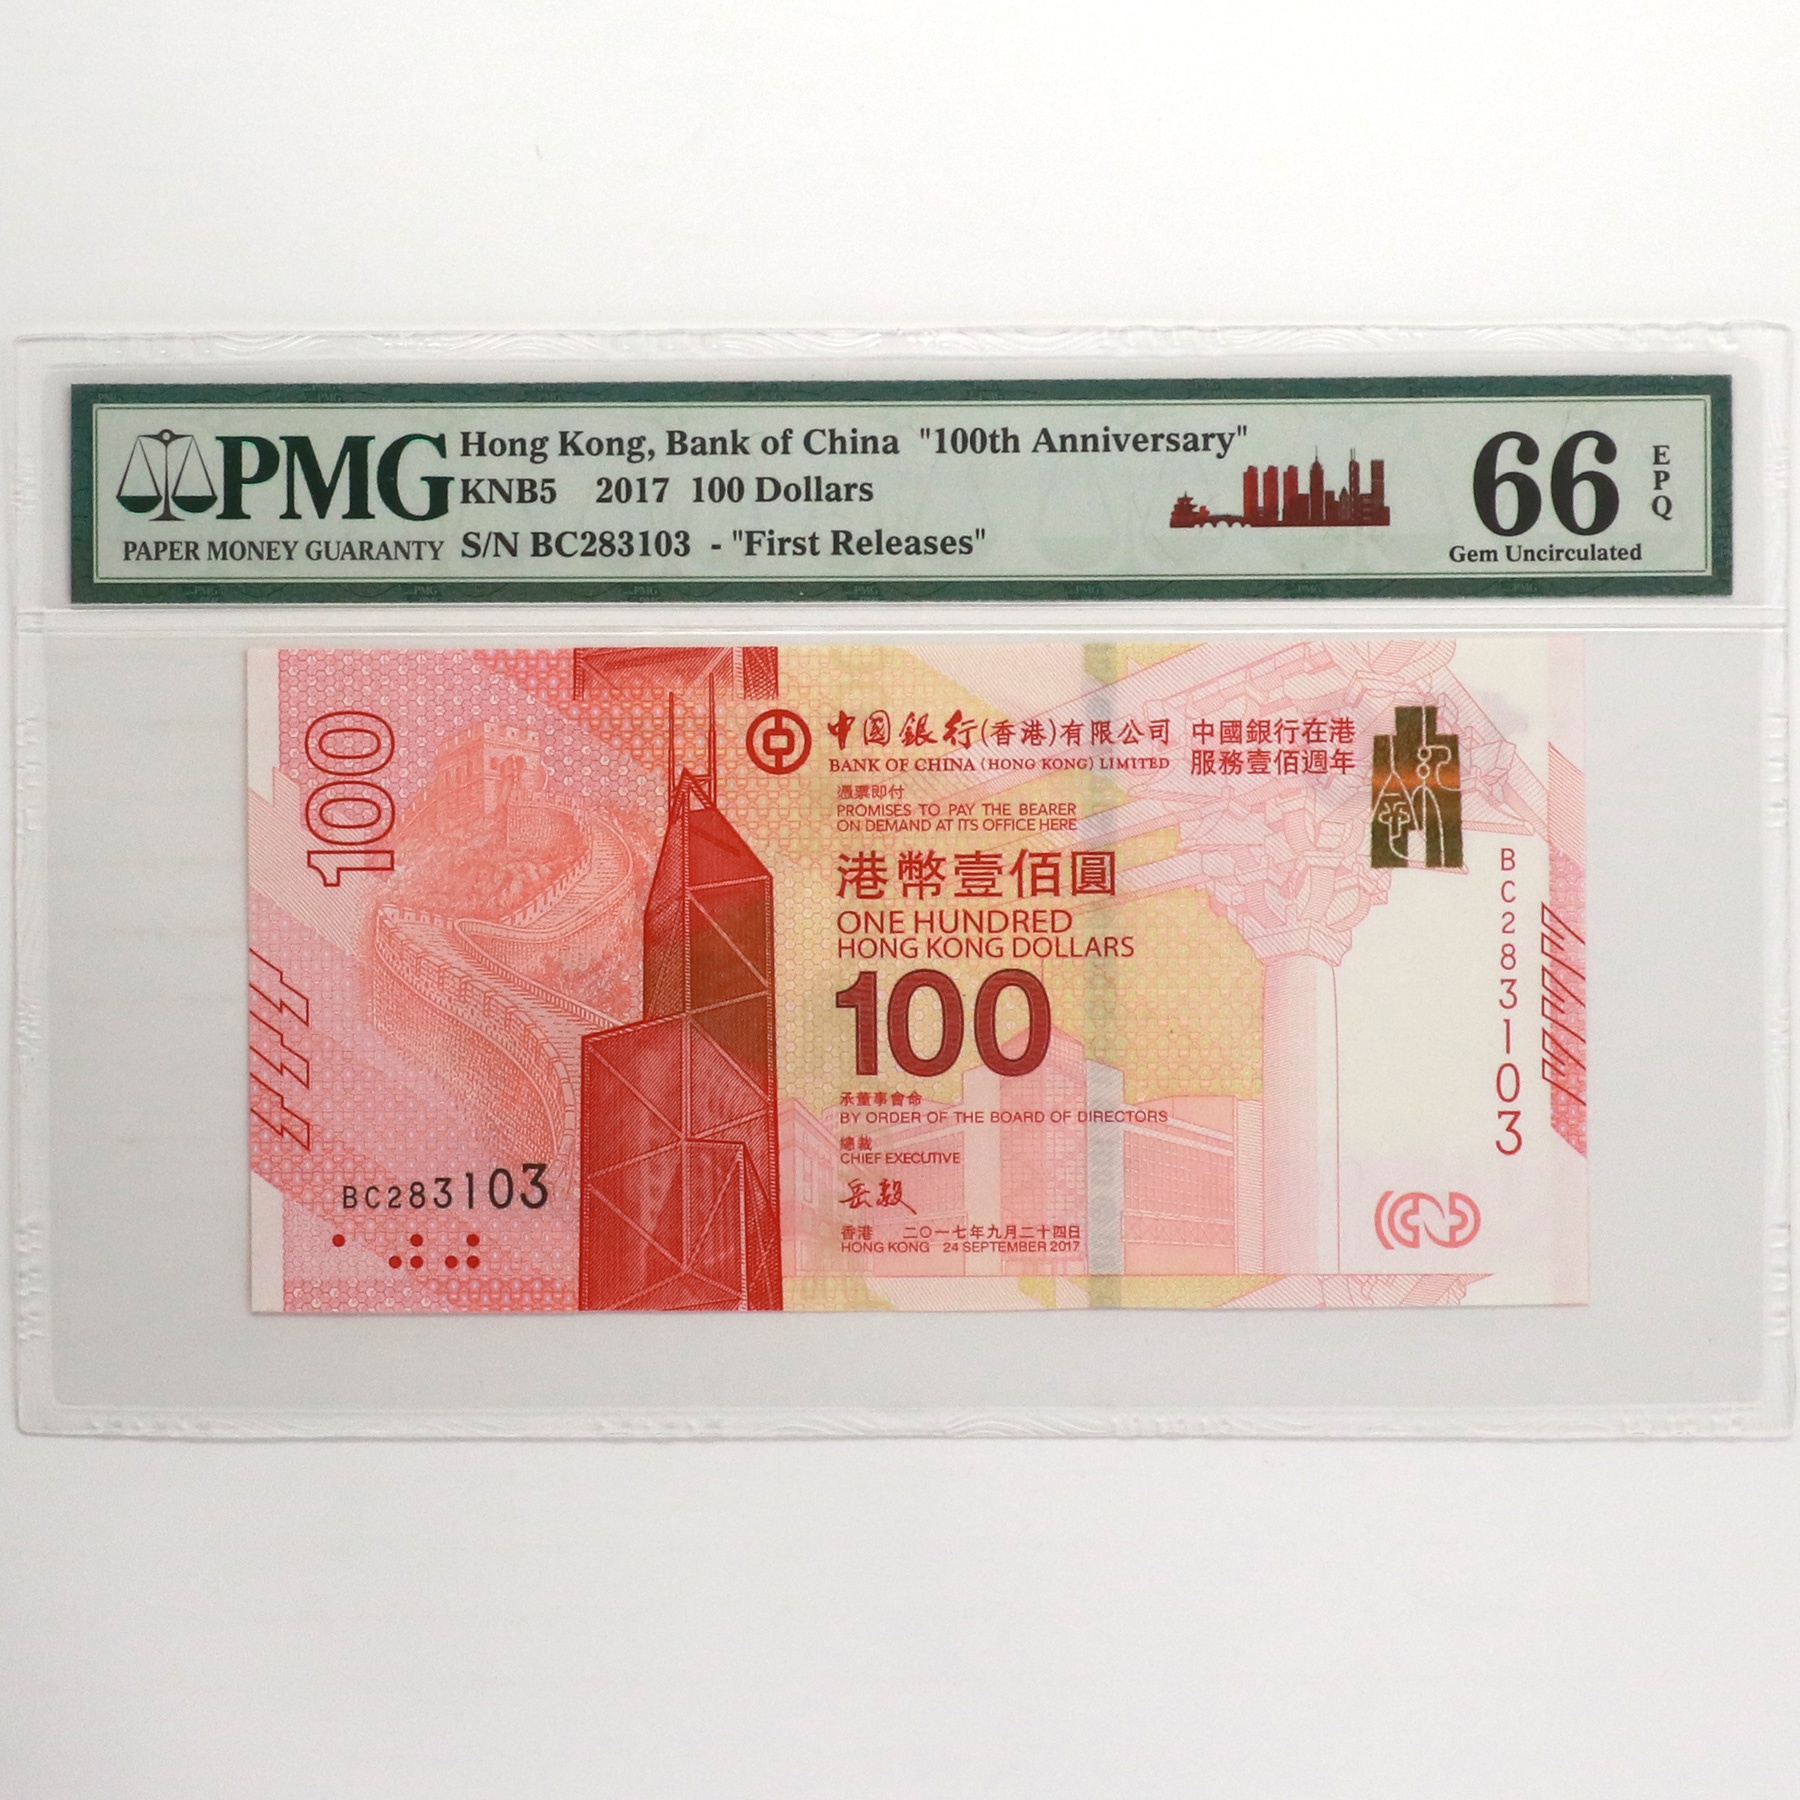 2017年中国银行在港服务100周年港币纪念钞壹佰元